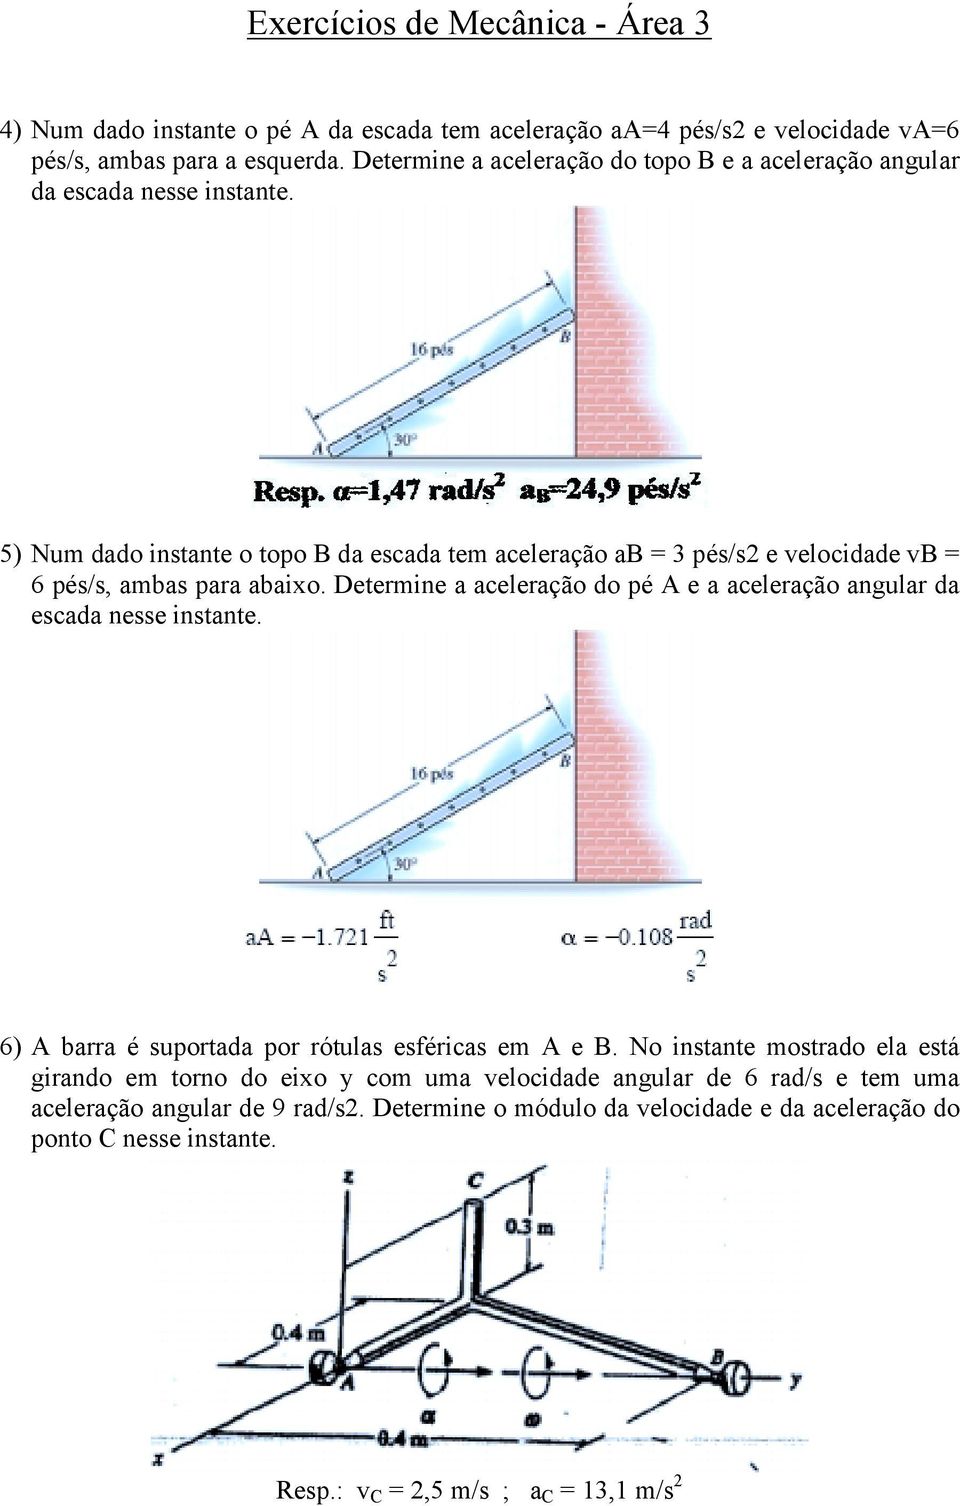 5) Num dado instante o topo B da escada tem aceleração ab = 3 pés/s2 e velocidade vb = 6 pés/s, ambas para abaixo.